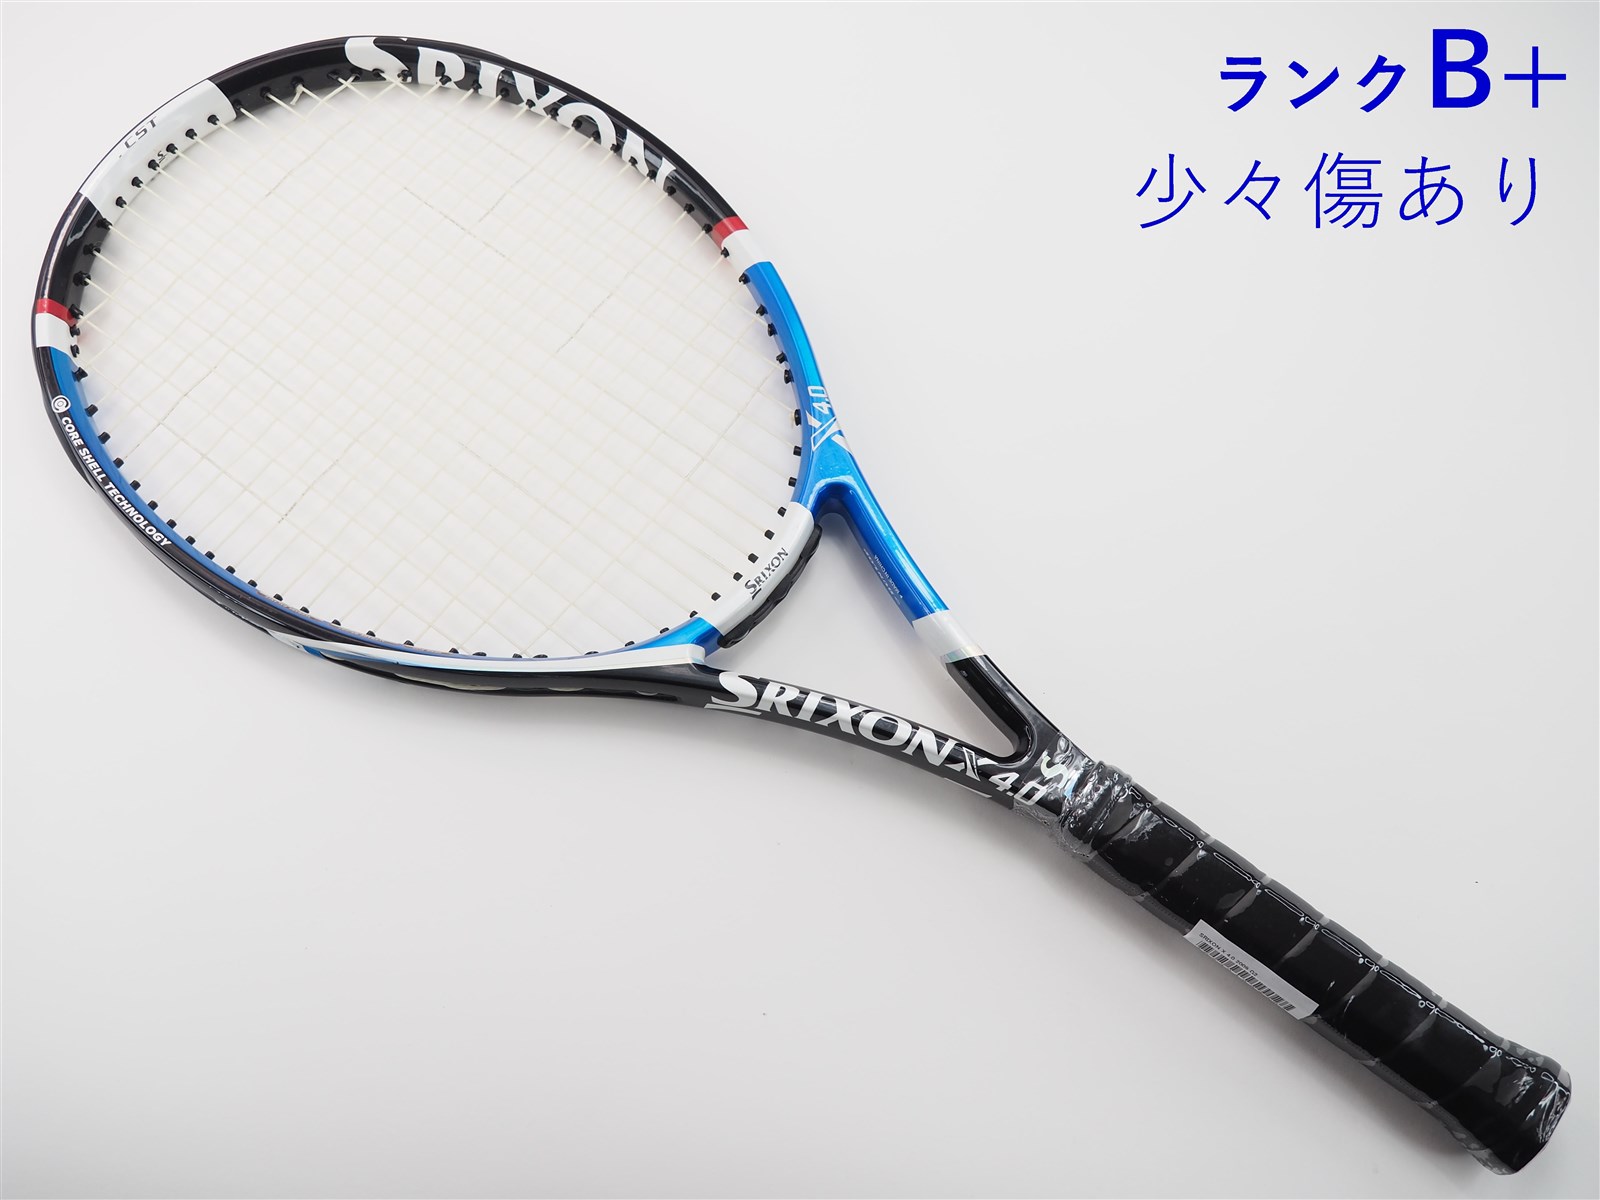 テニスラケット スリクソン レヴォ エックス 2.0 2011年モデル (G3)SRIXON REVO X 2.0 2011ガット無しグリップサイズ